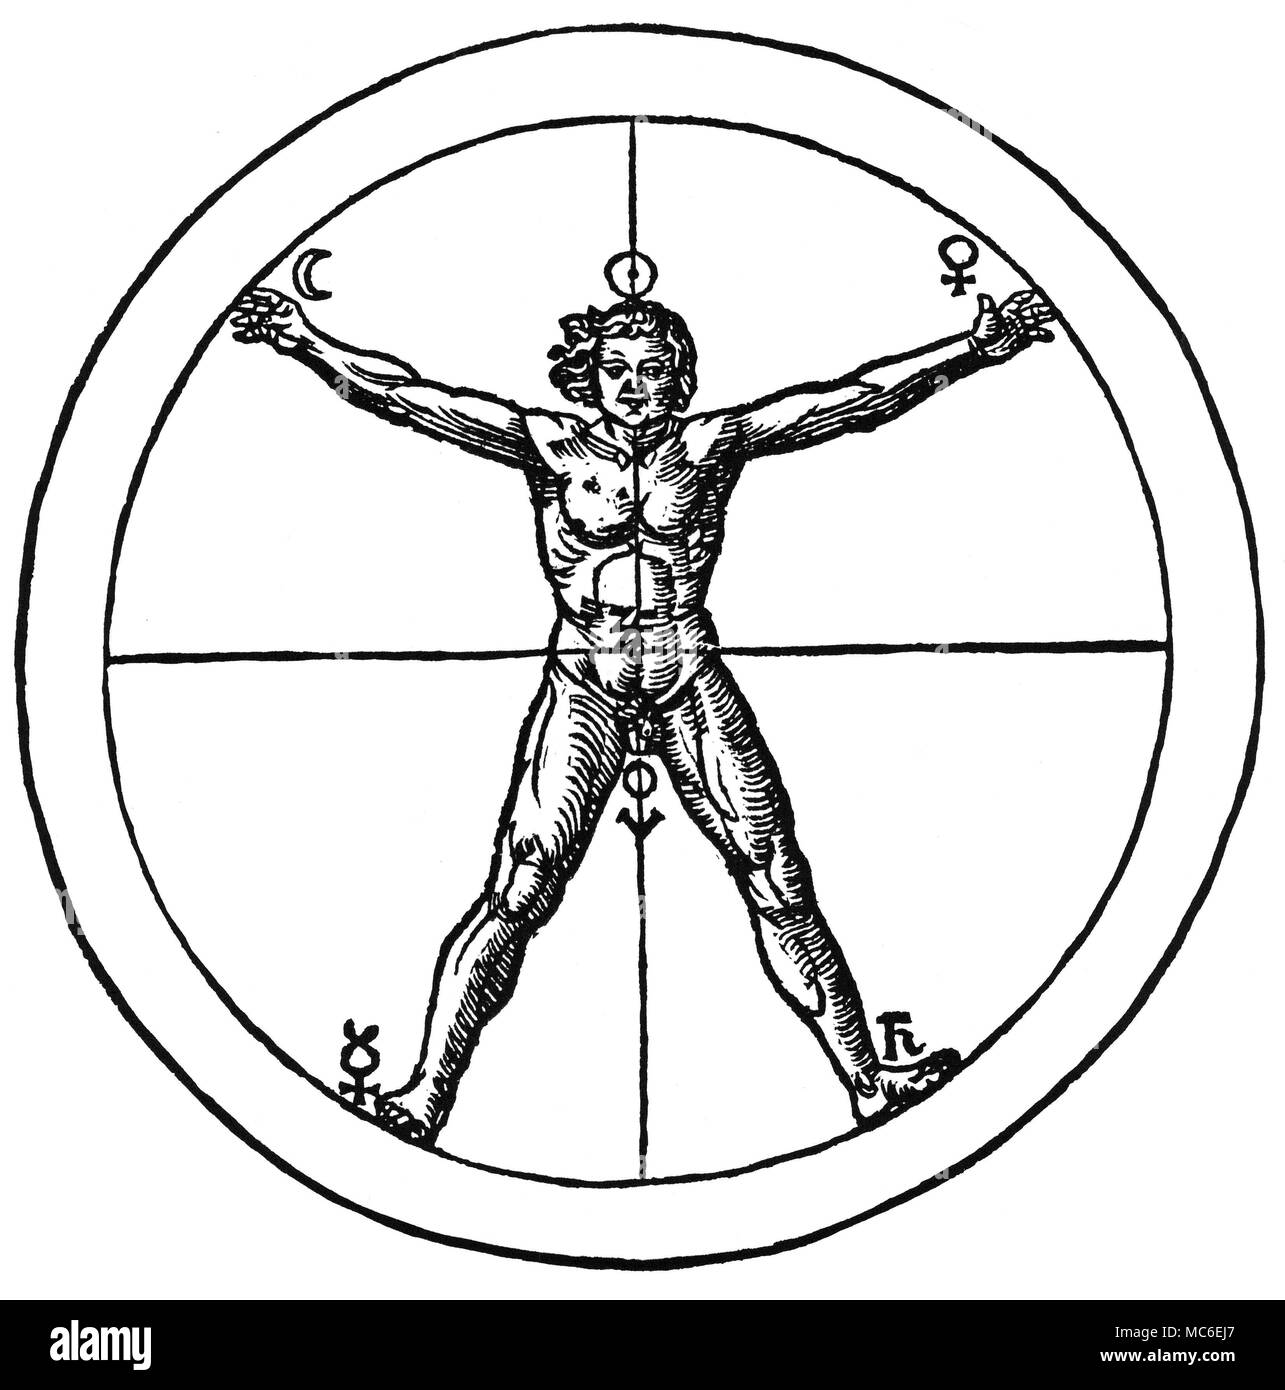 I simboli magici - PENTAGRAMMIC uomo il cosiddetto pentagrammic uomo in piedi in un cerchio il cui centro è l'ombelico. Sigils epicicloidali sono collegati a ciascuna delle estremità (la quinta è la testa solarized). Da Cornelius Agrippa, De occulta philosophia, edizione 1533. Foto Stock